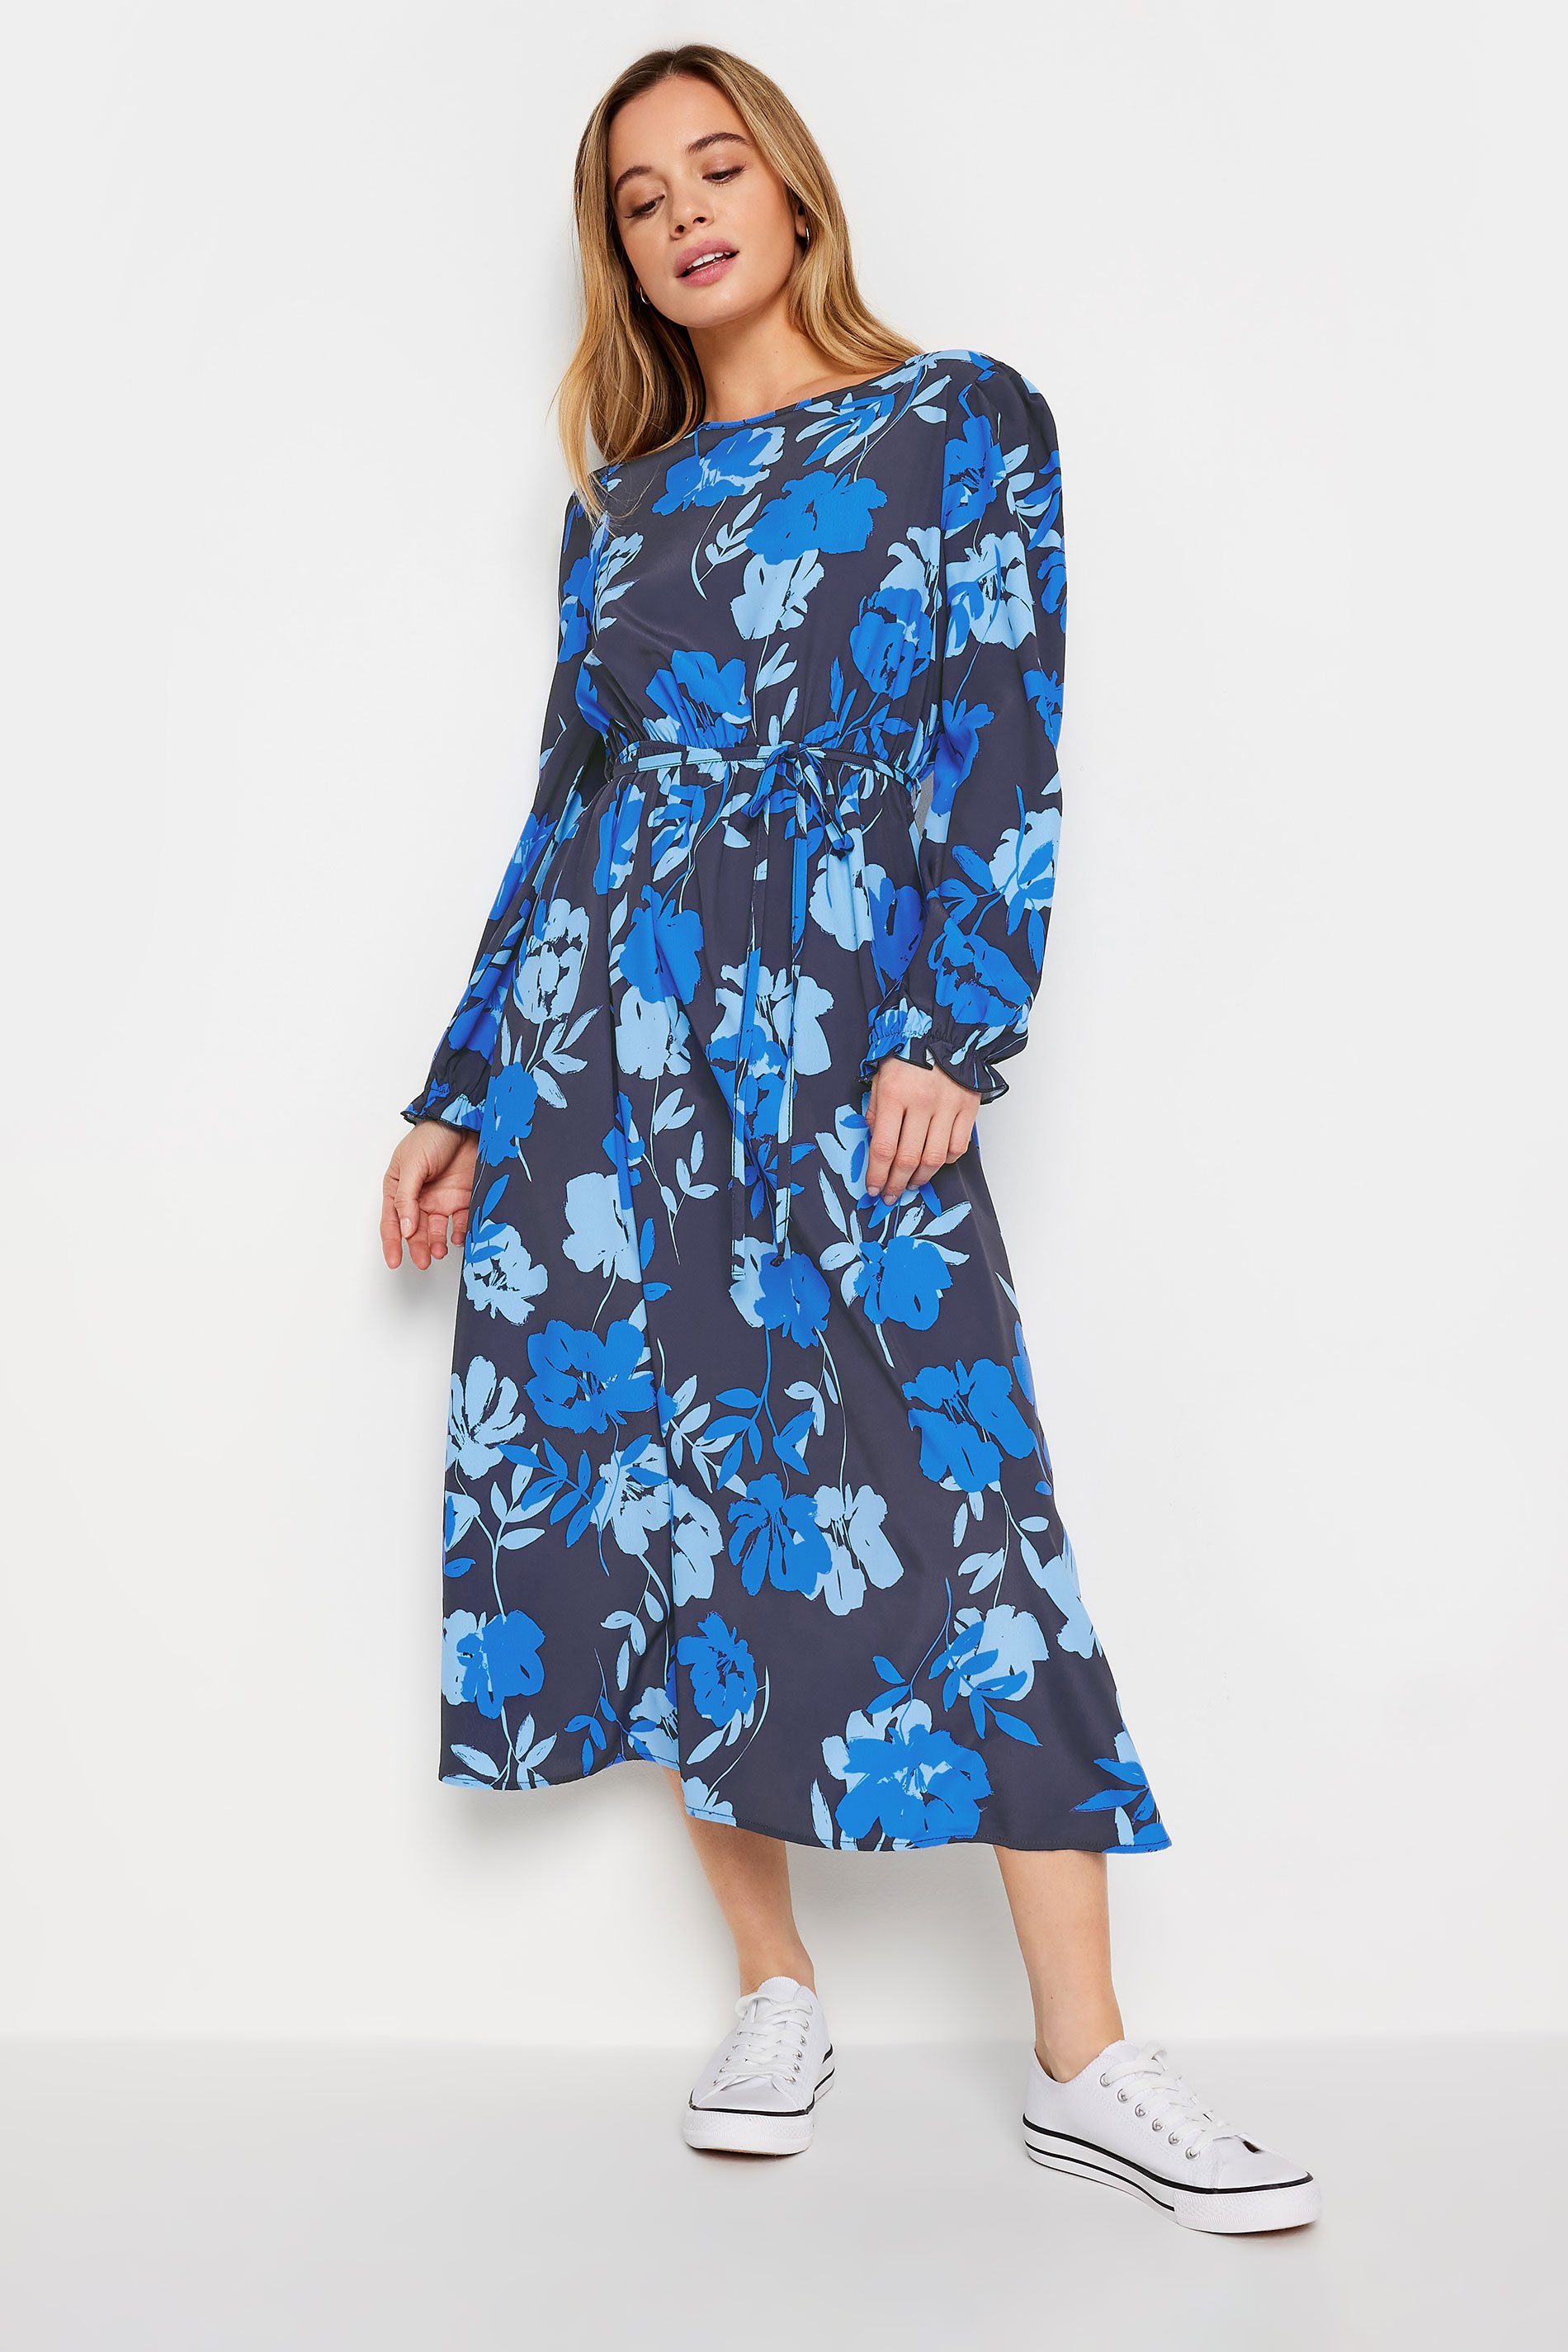 M&Co Petite Blue Floral Tie Waist Midi Smock Dress | M&Co 1